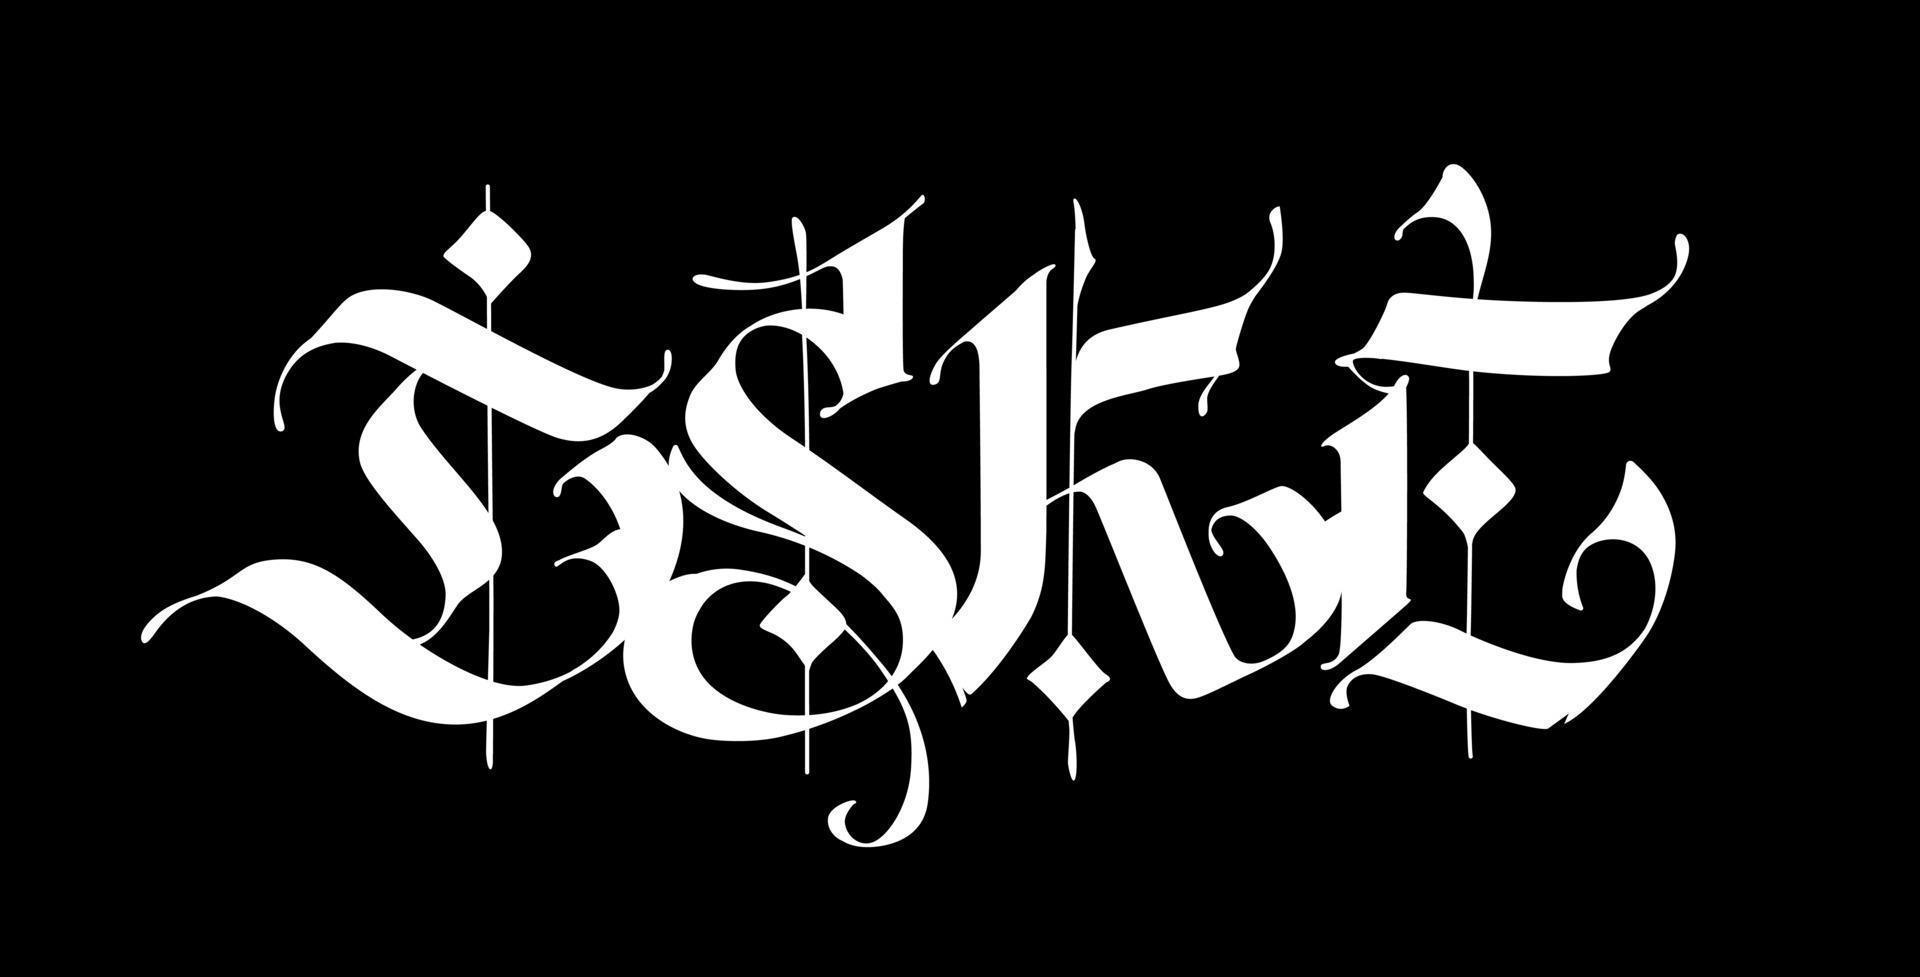 d, s, k, e, im gotischen Stil. Vektor. Buchstaben und Symbole auf schwarzem Hintergrund. Kalligraphie mit weißem Marker vektor